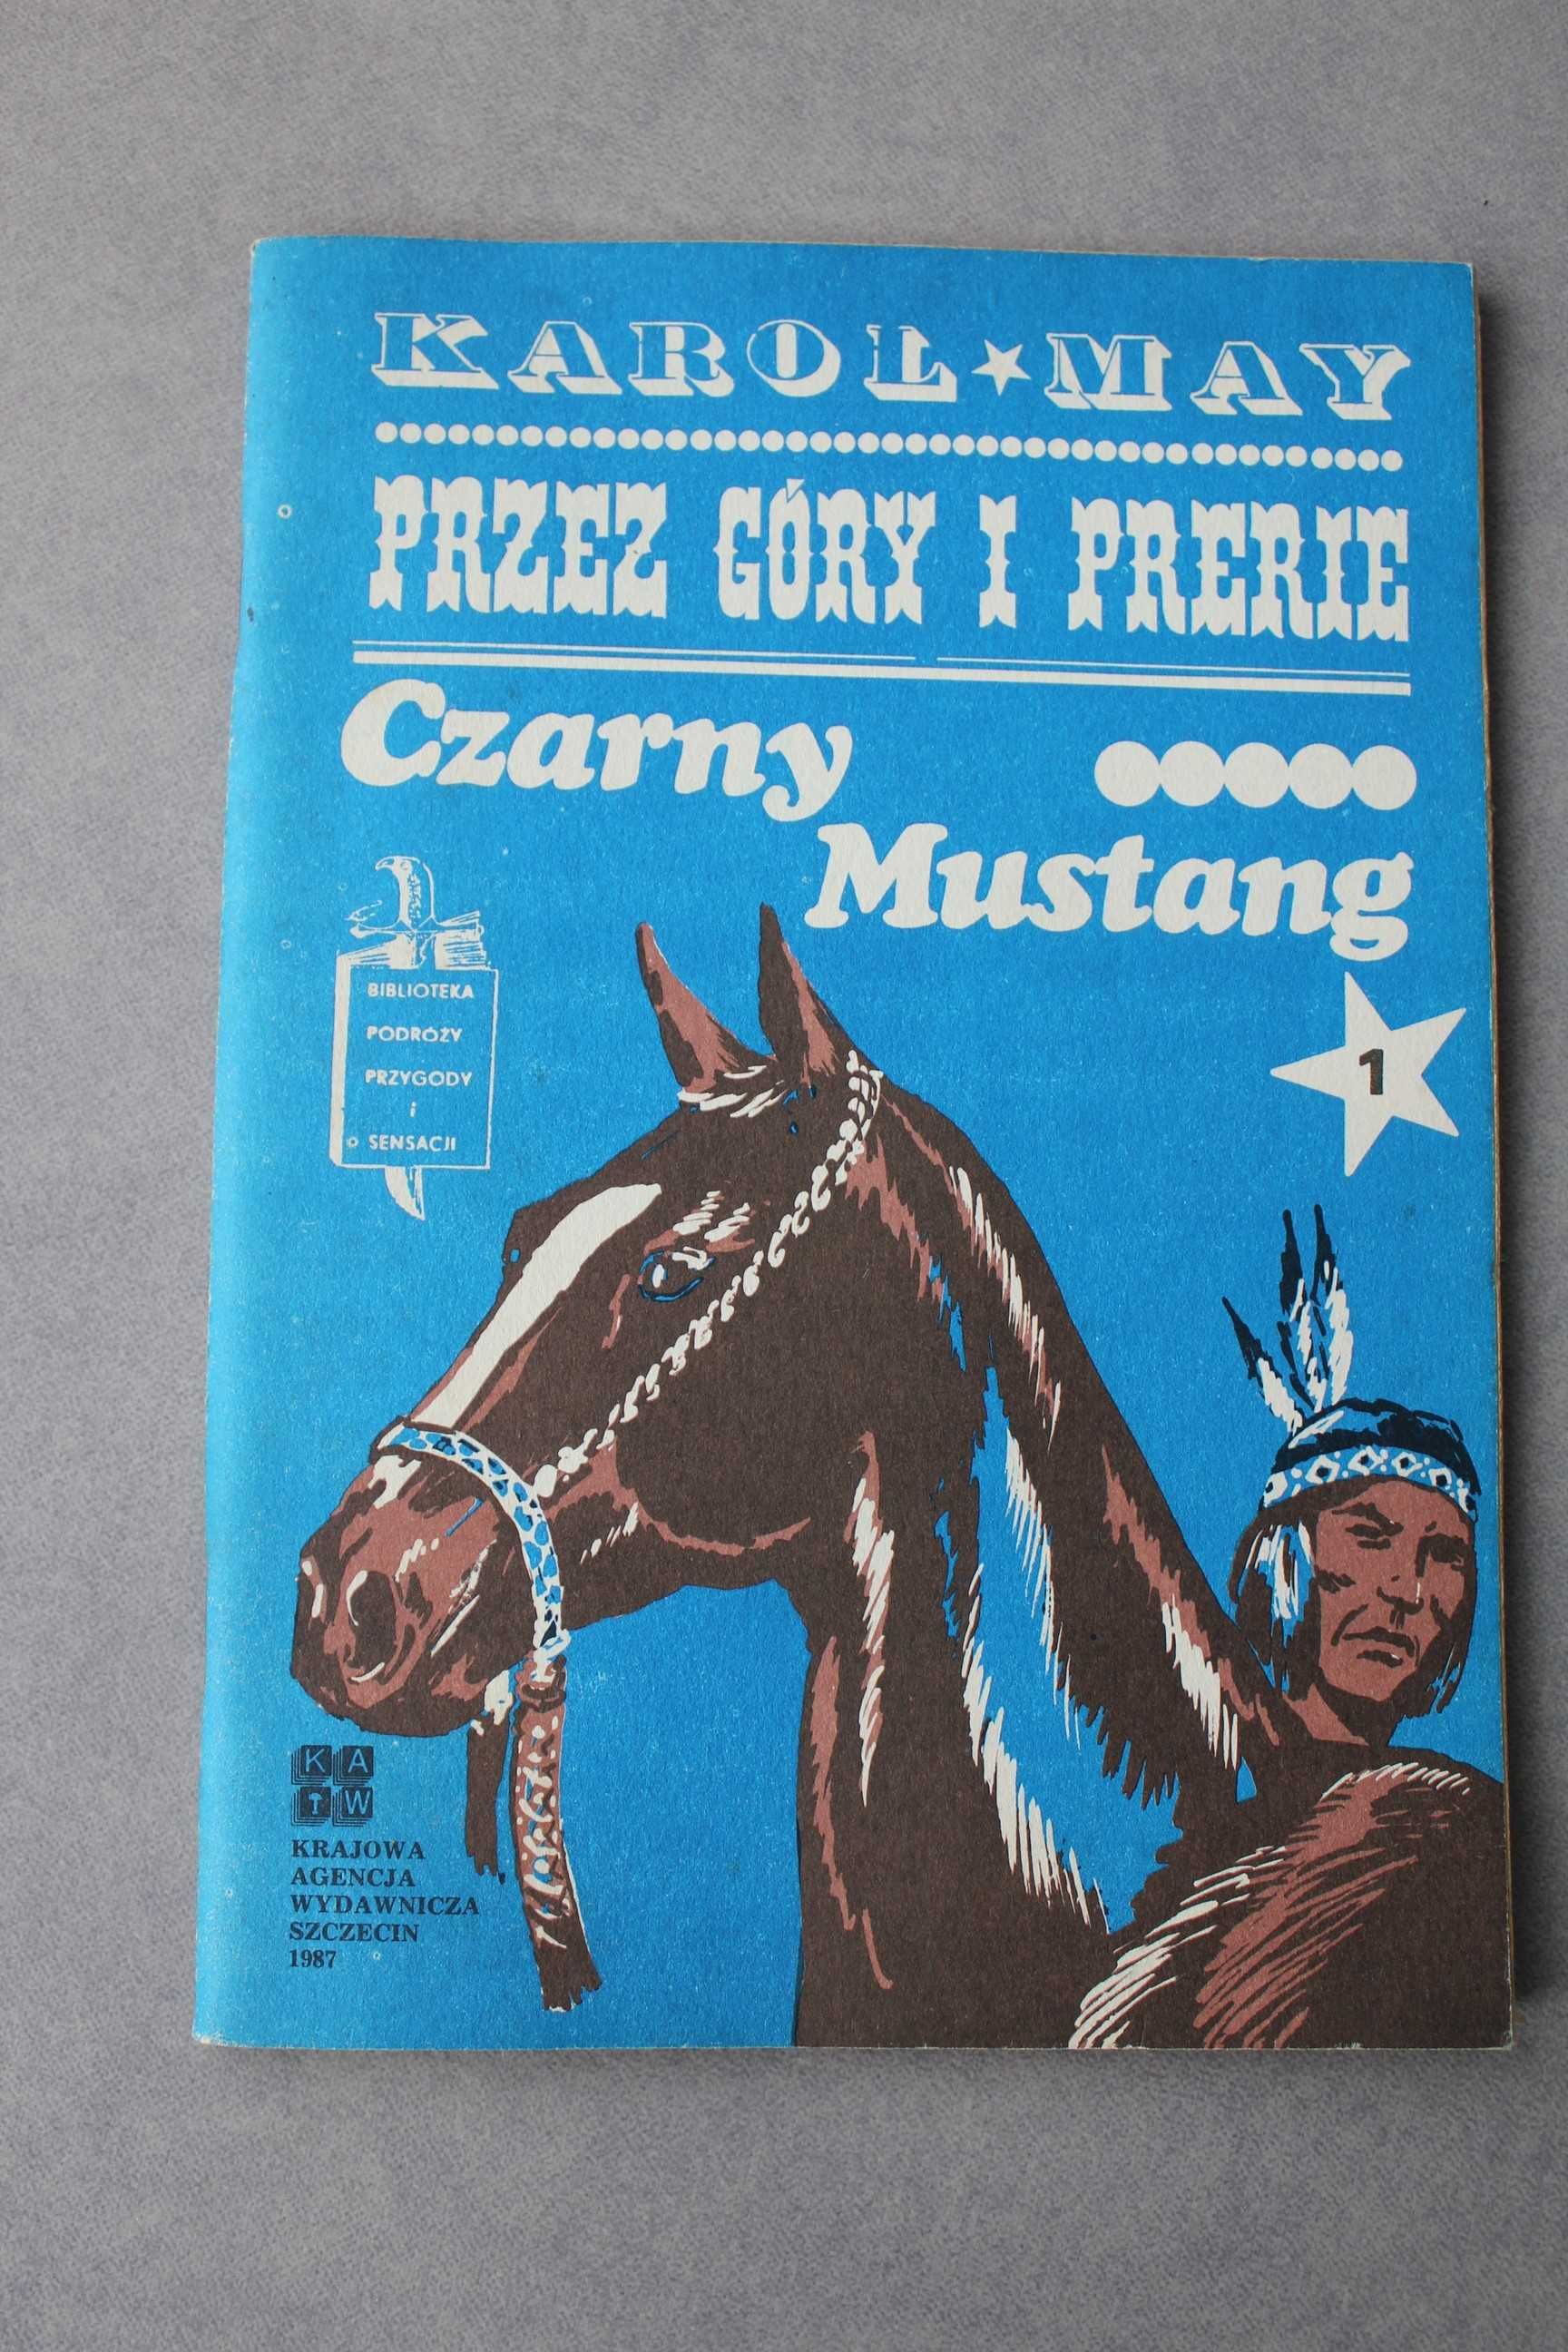 Czarny Mustang Przez góry i prerie Karol May trzy części KAW 1987